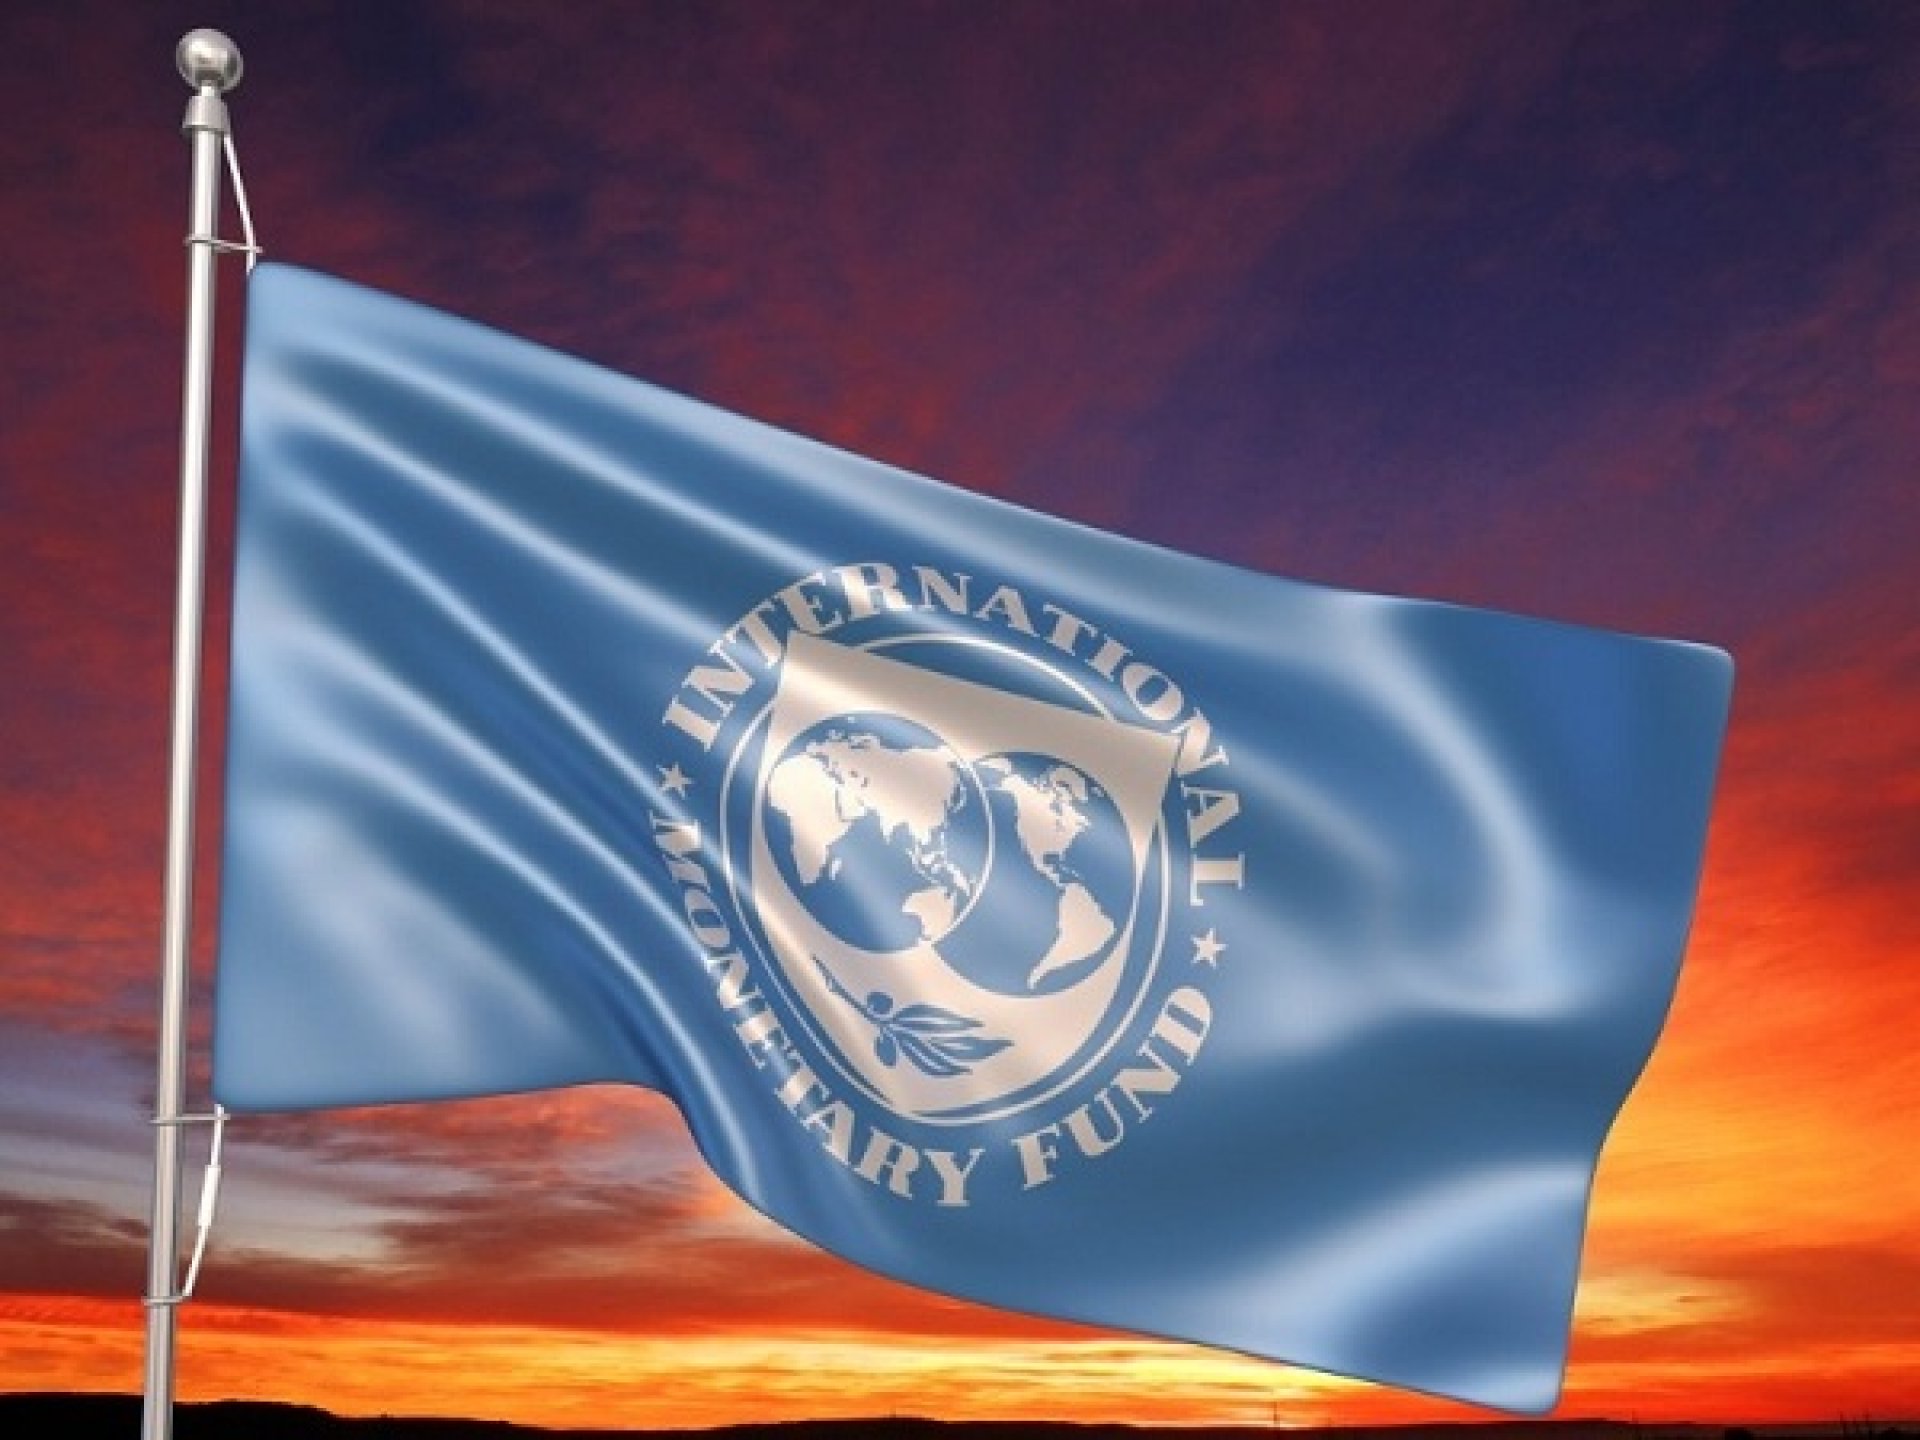 Tìm hiểu về Quỹ tiền tệ quốc tế IMF (International Monetary Fund)